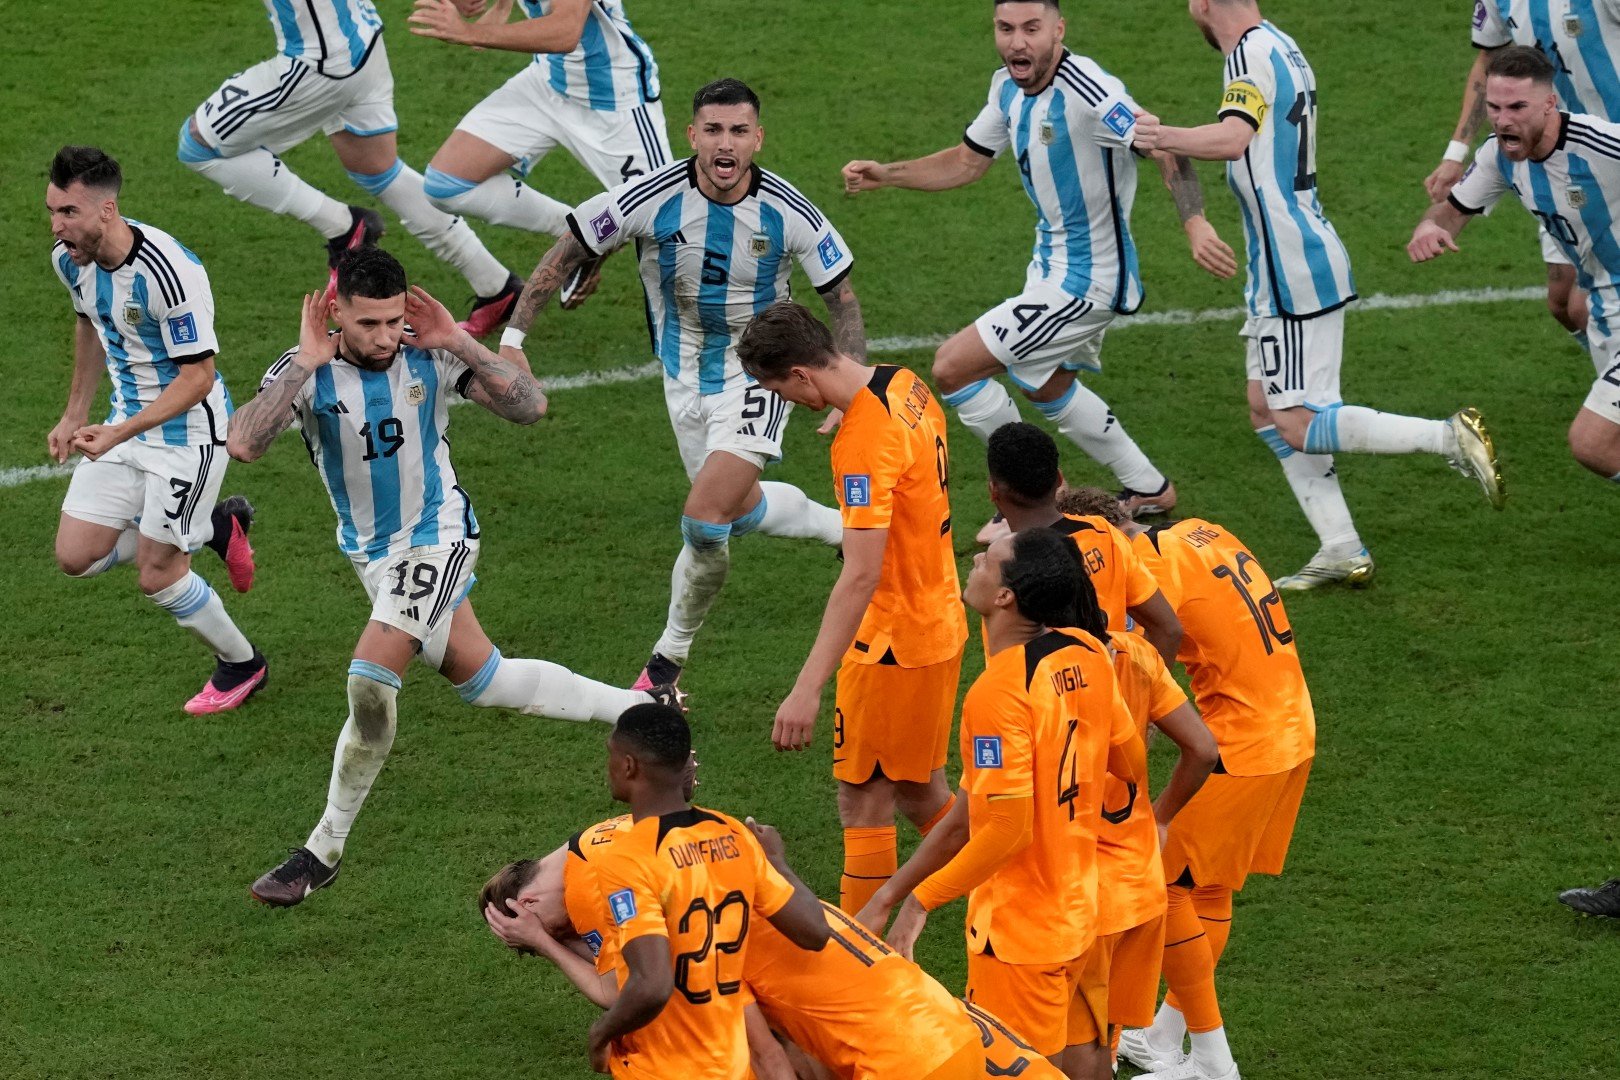 Още един мач, който може да се определи като футболна война. Аржентина изпусна аванс от 0:2, за да влезе в продължения, но при дузпите показа нерви от стомана. Конкретният кадър показва какво бе отношението им към съперника.